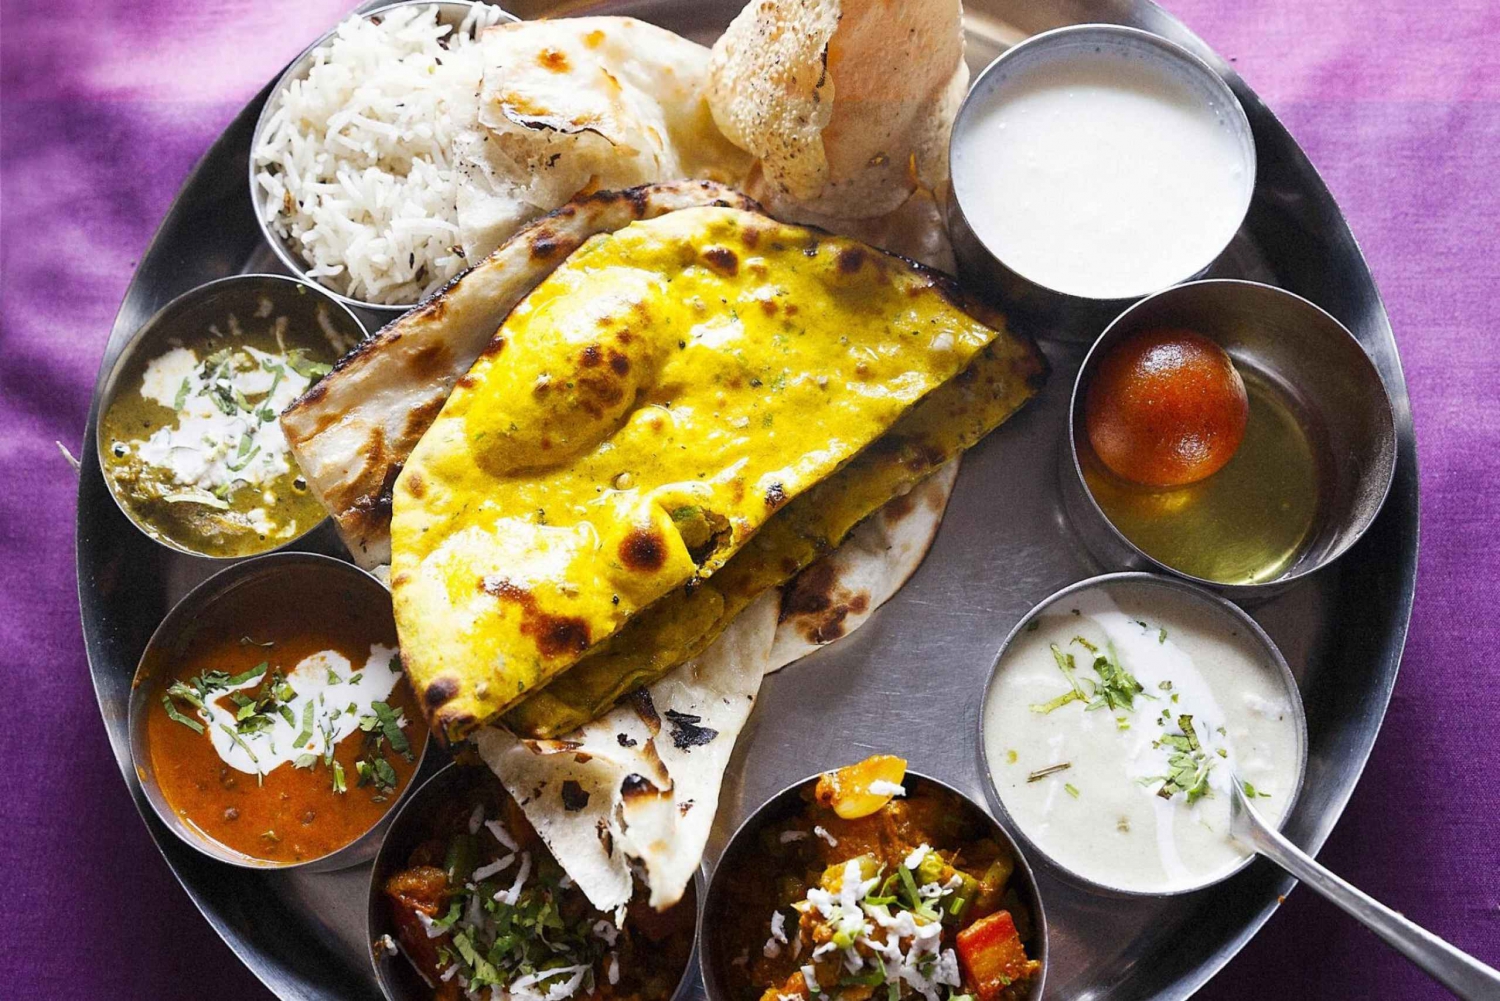 Jaipur autentisk madlavningskursus og middag med kokkefamilien